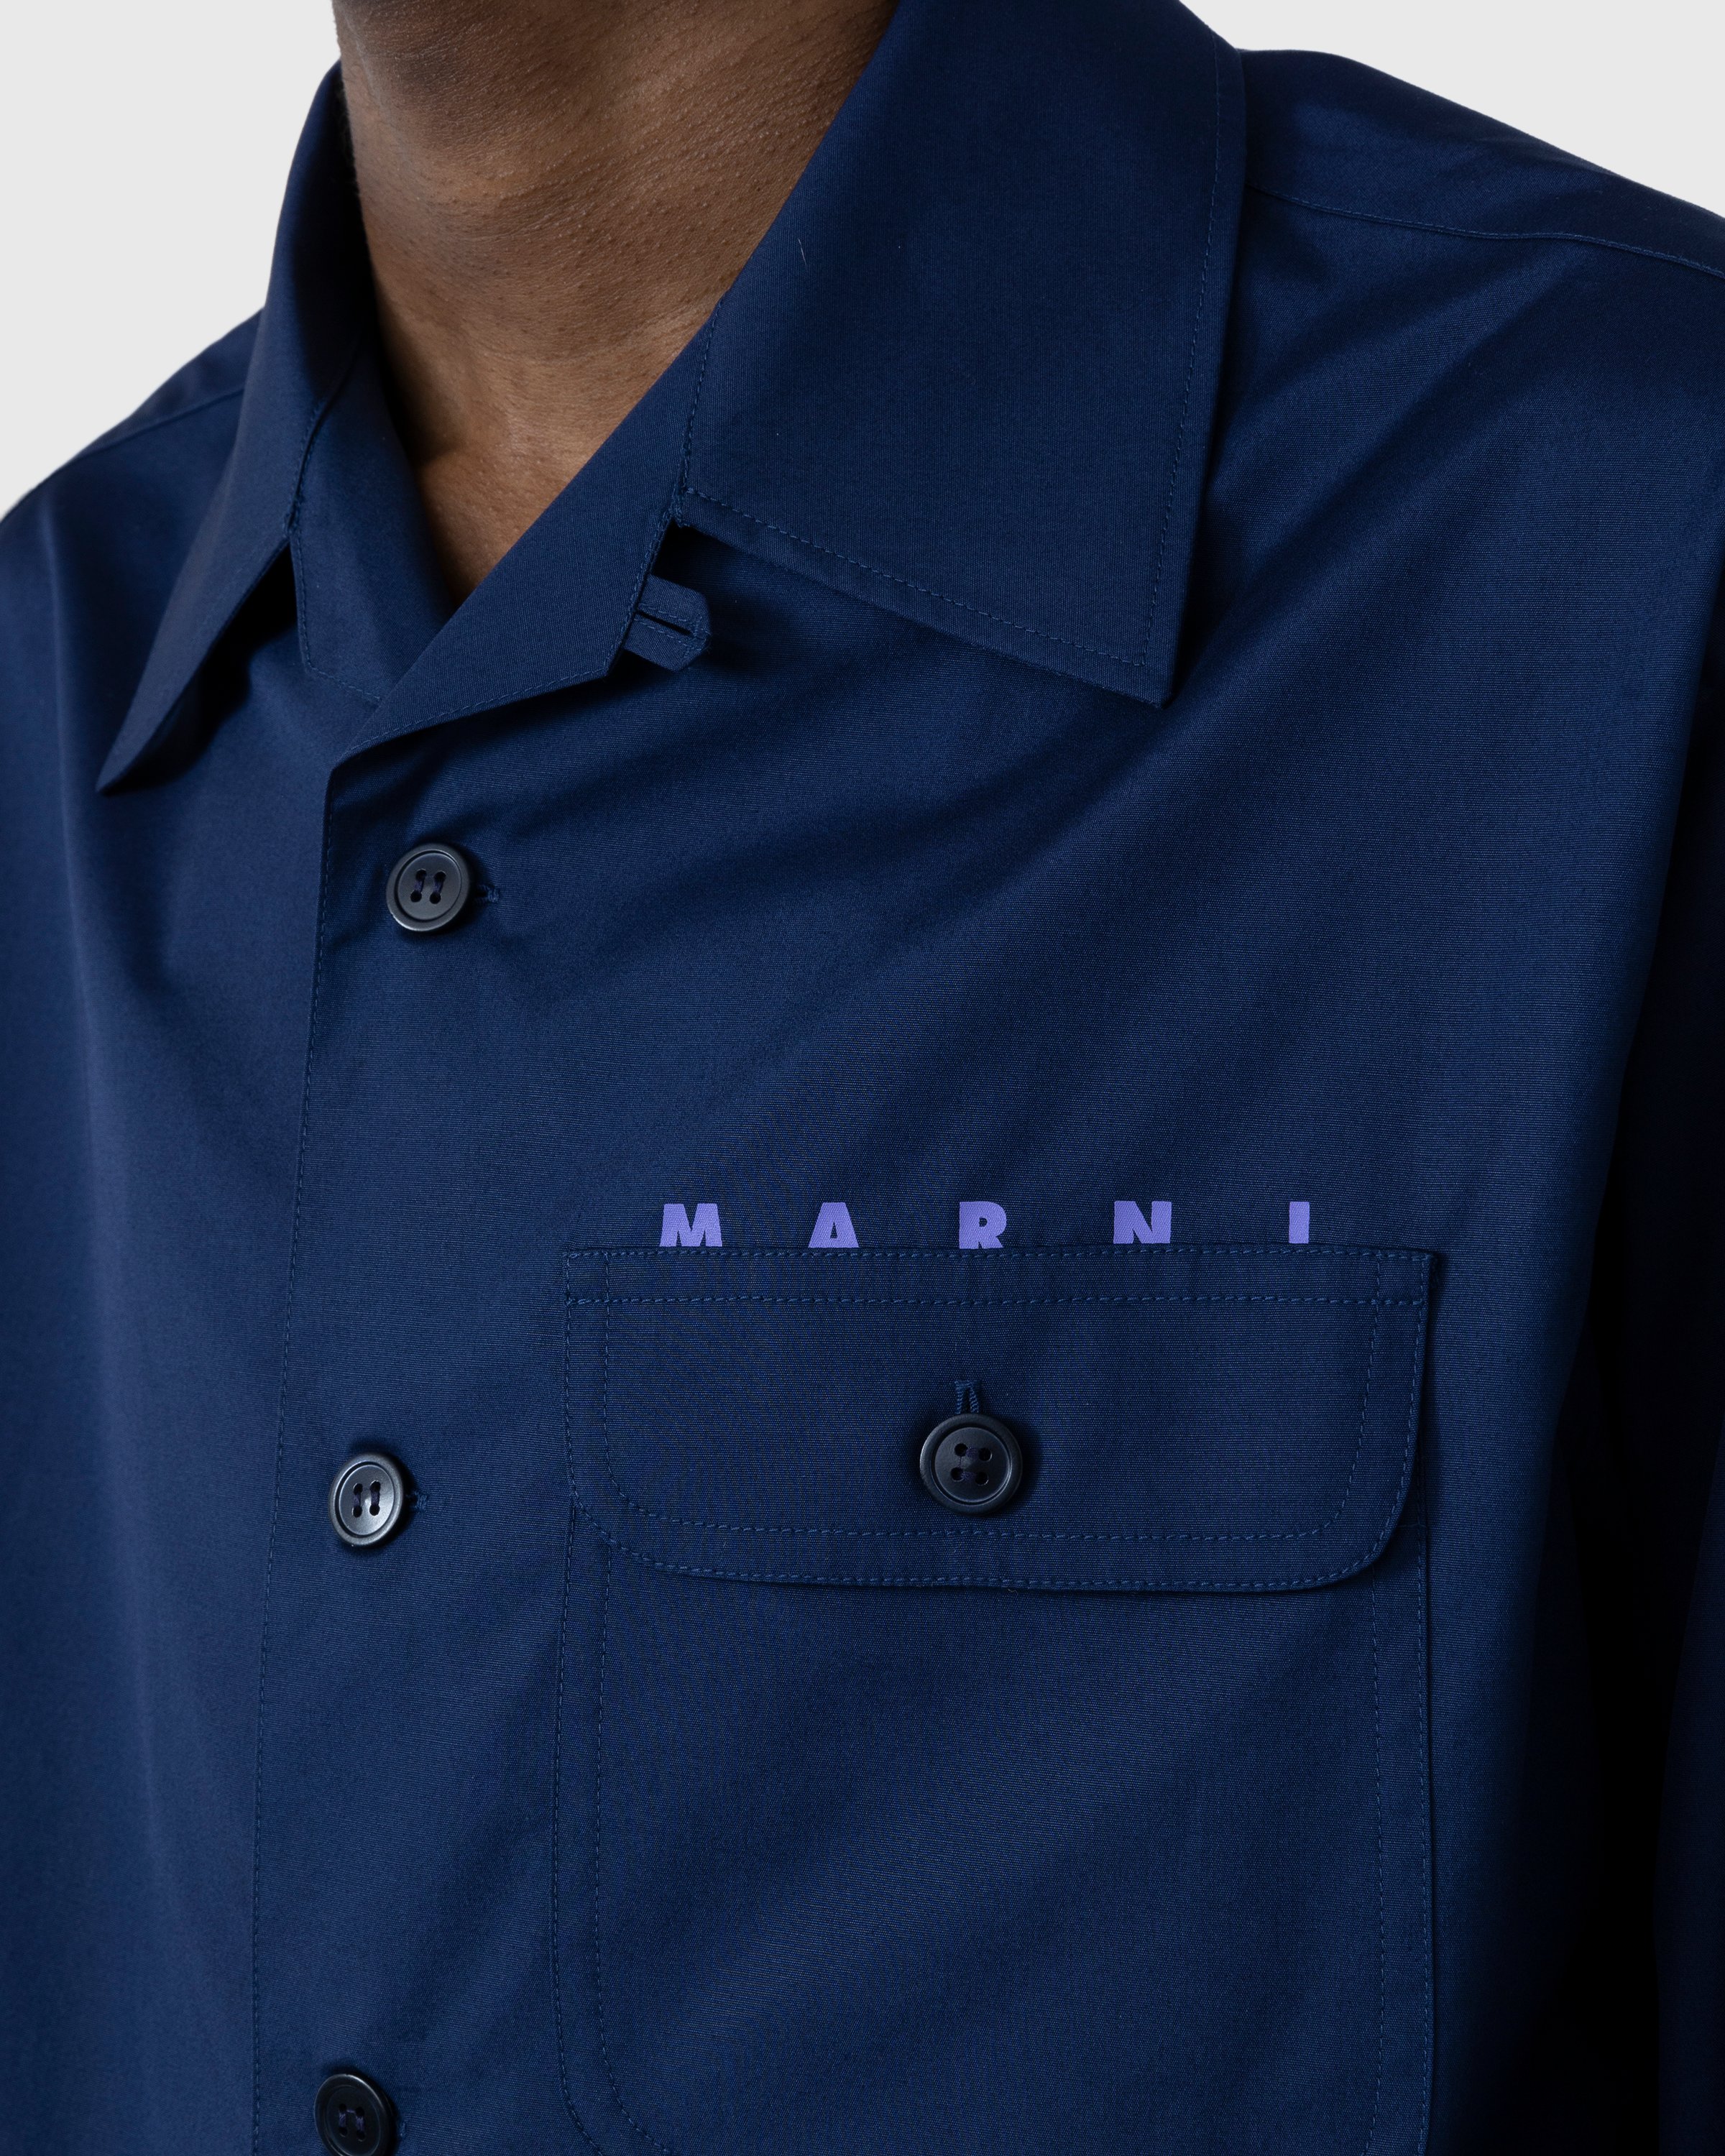 Marni - Logo Bowling Shirt Ink - Clothing - Blue - Image 7